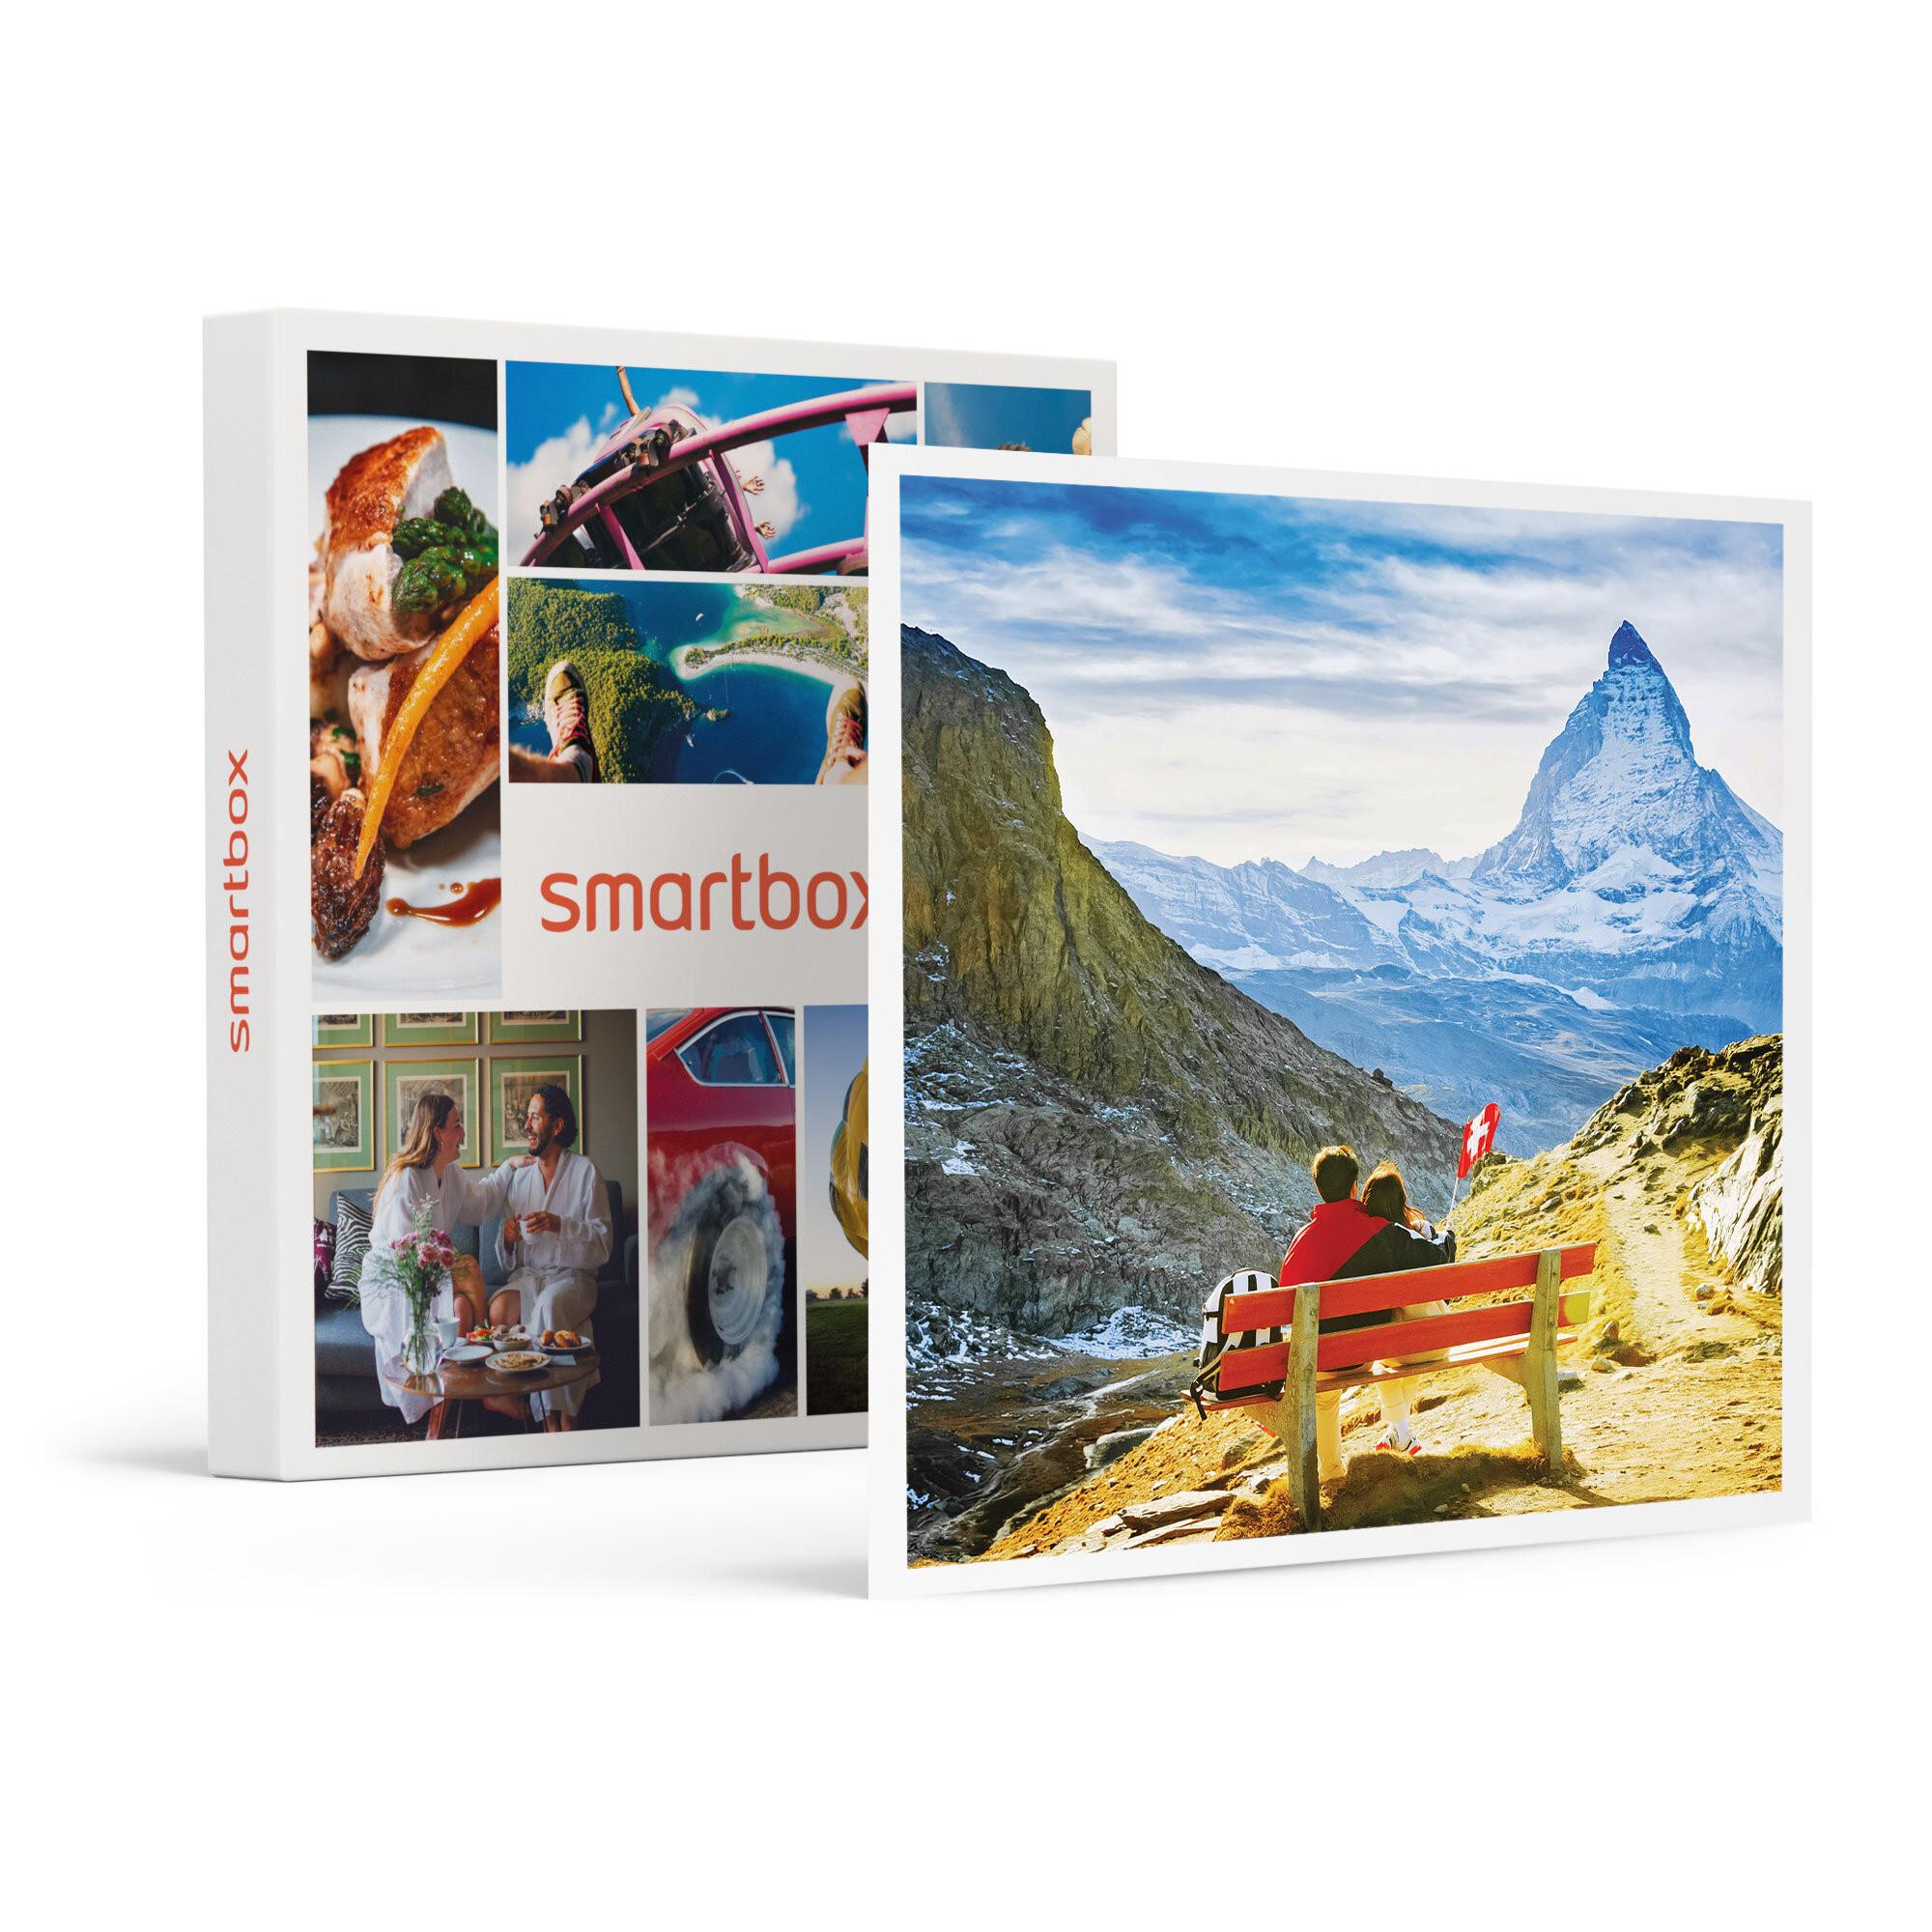 Smartbox  Romantici soggiorni di 1 o 2 notti in Svizzera - Cofanetto regalo 